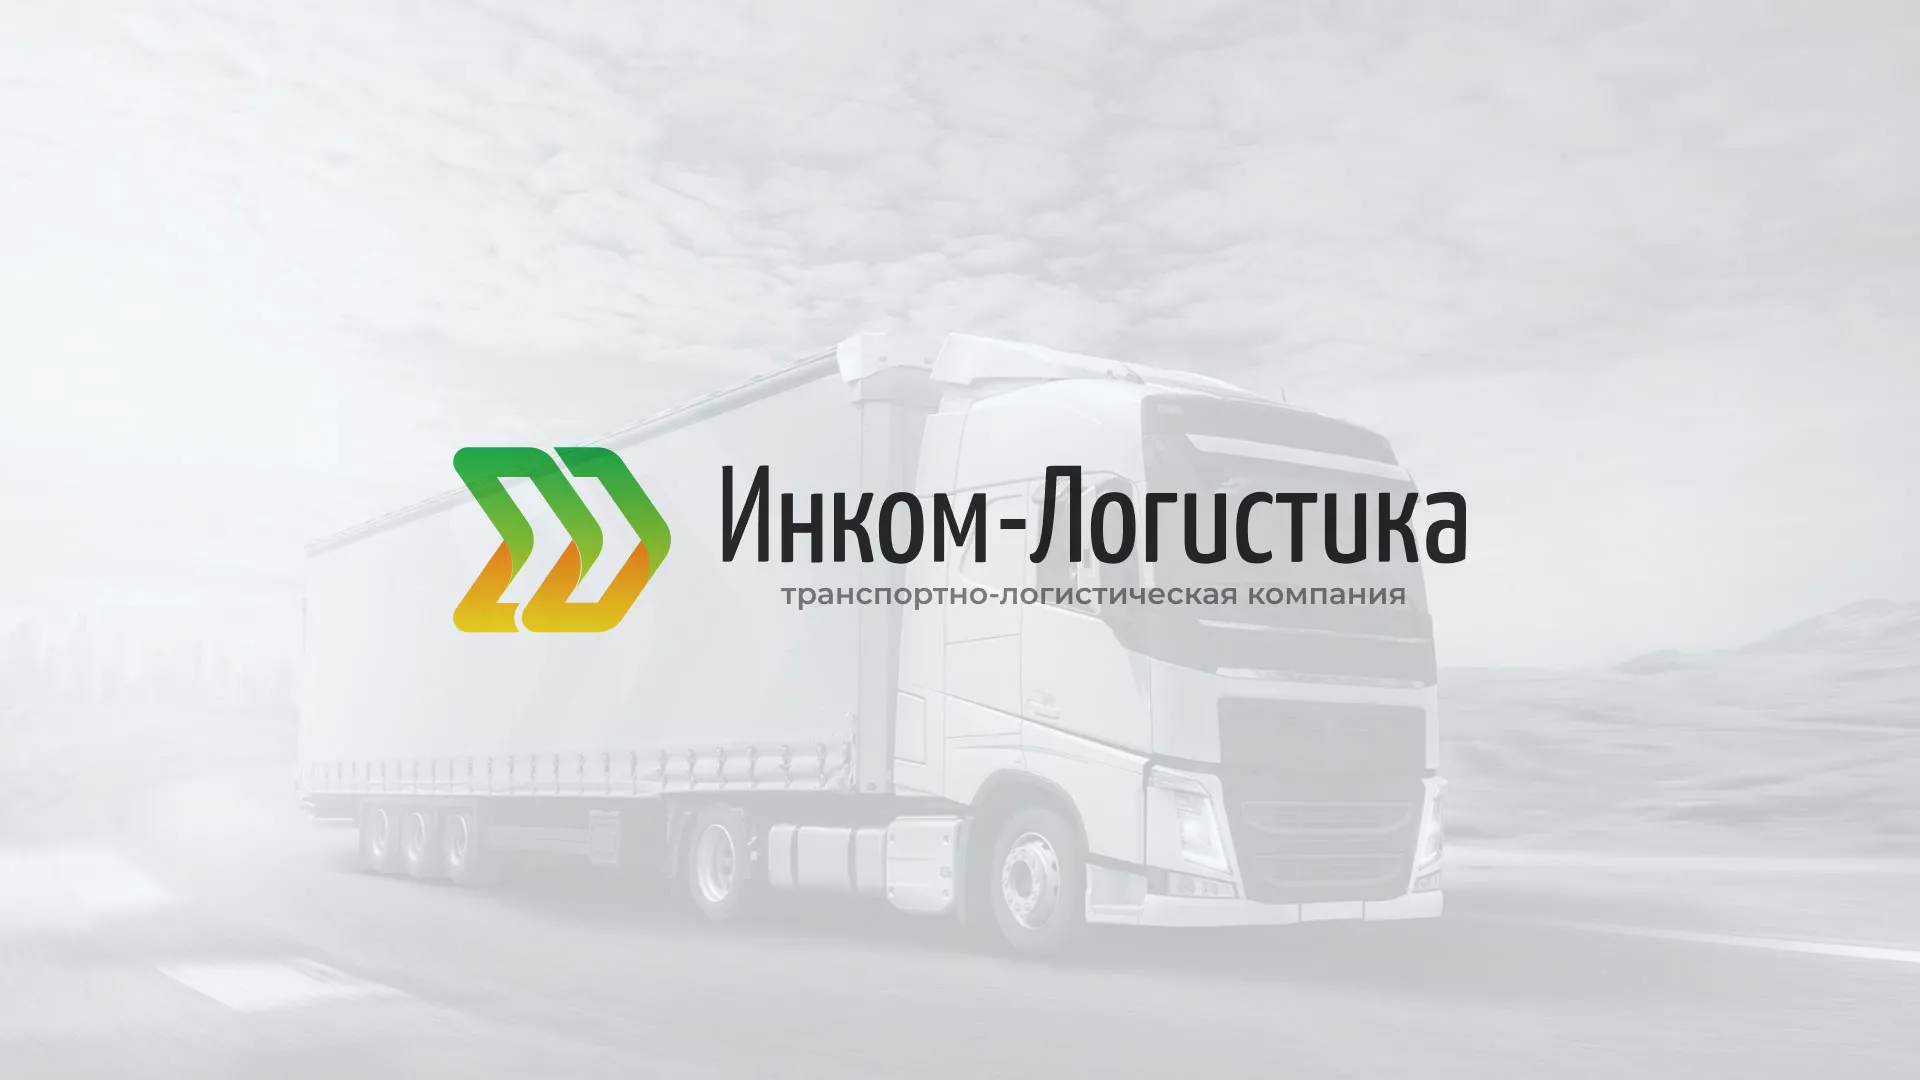 Разработка логотипа и сайта компании «Инком-Логистика» в Пскове